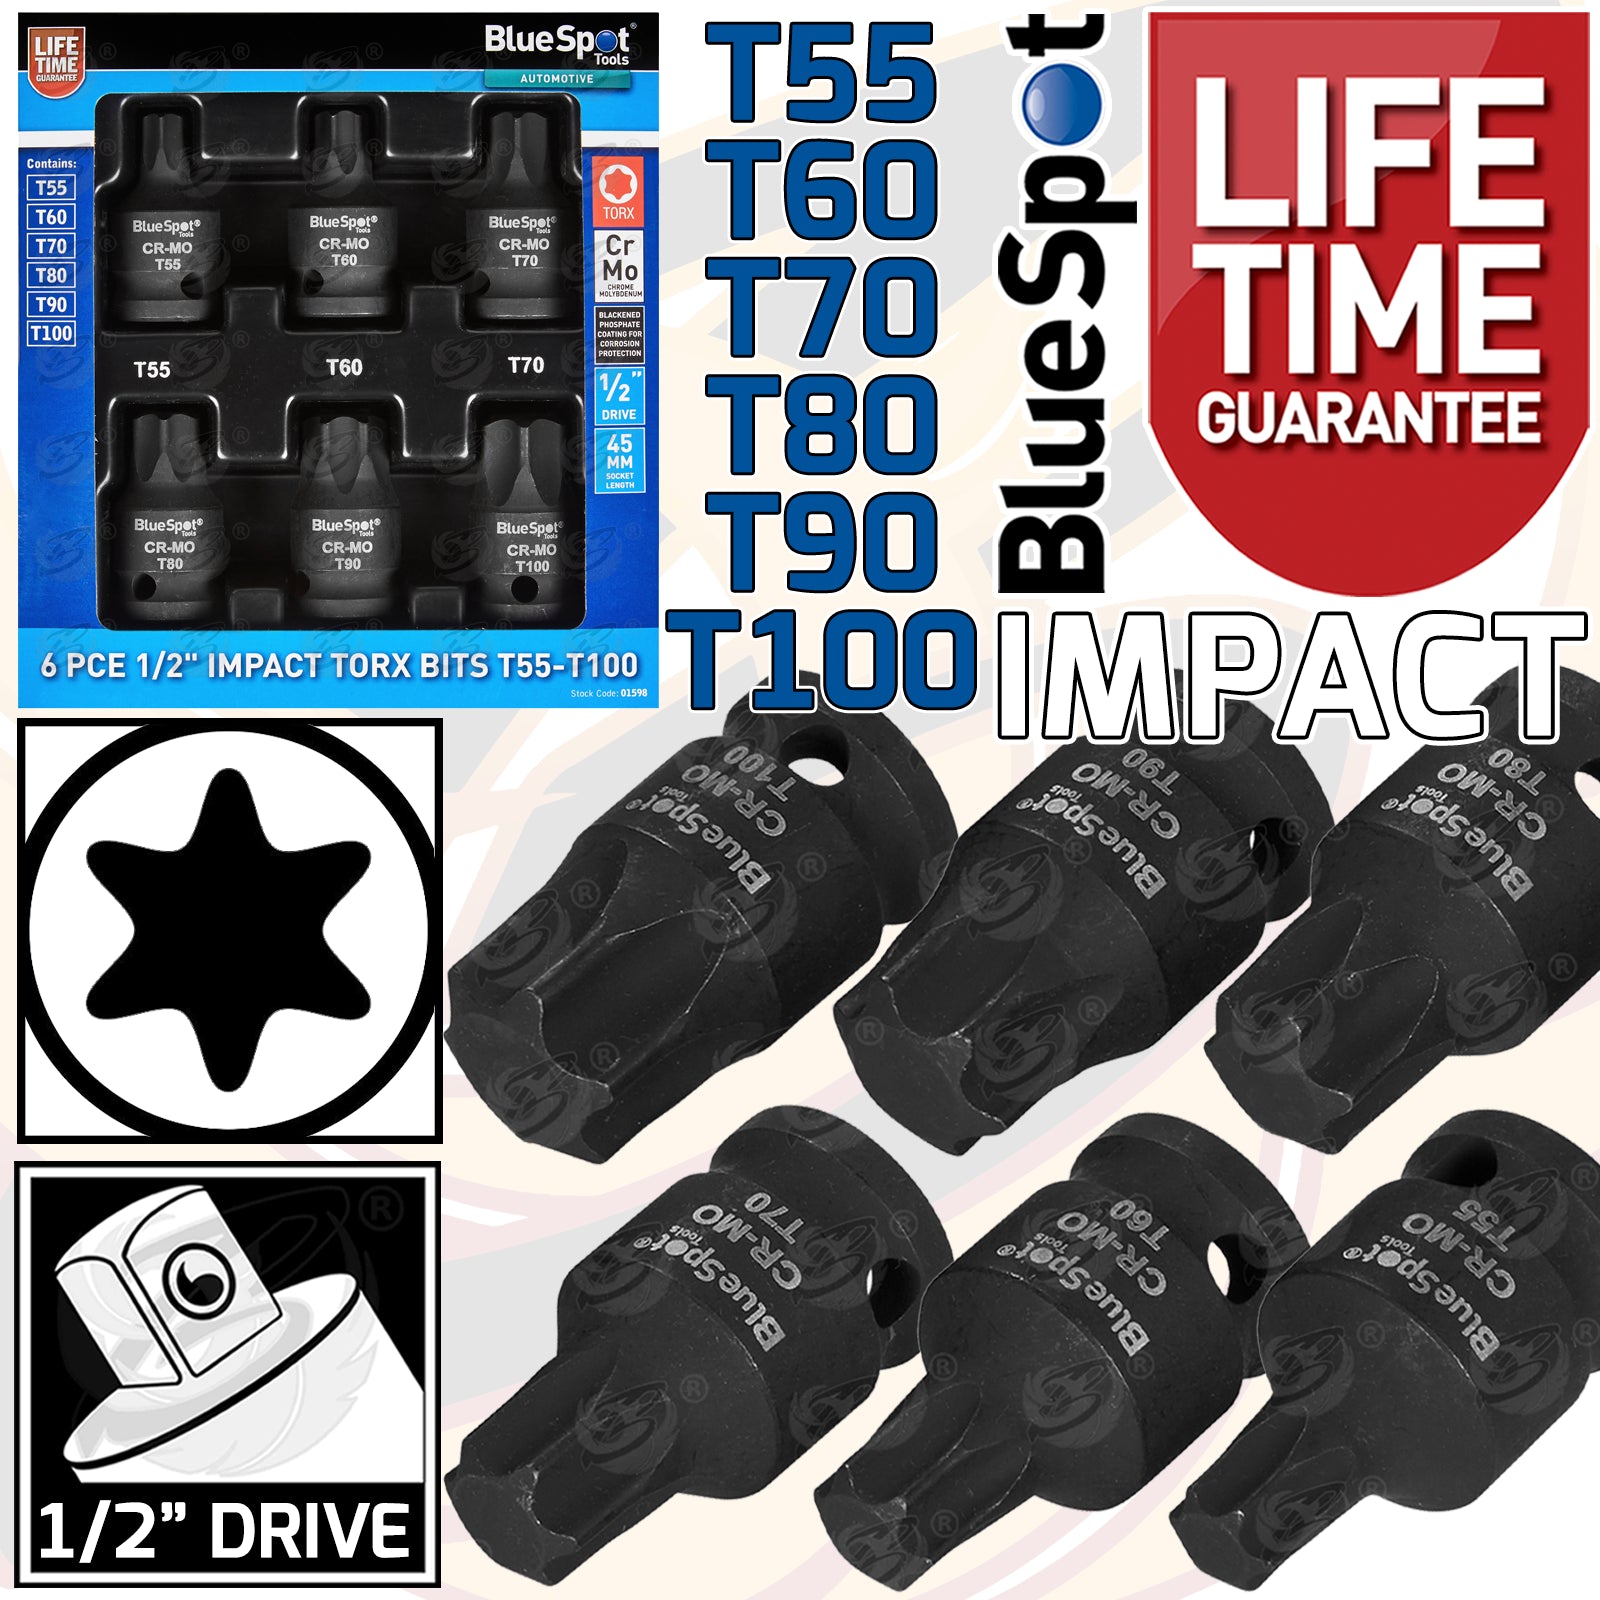 BLUESPOT 6PCS 1/2" DRIVE IMPACT TORX BIT SOCKETS T55 - T100